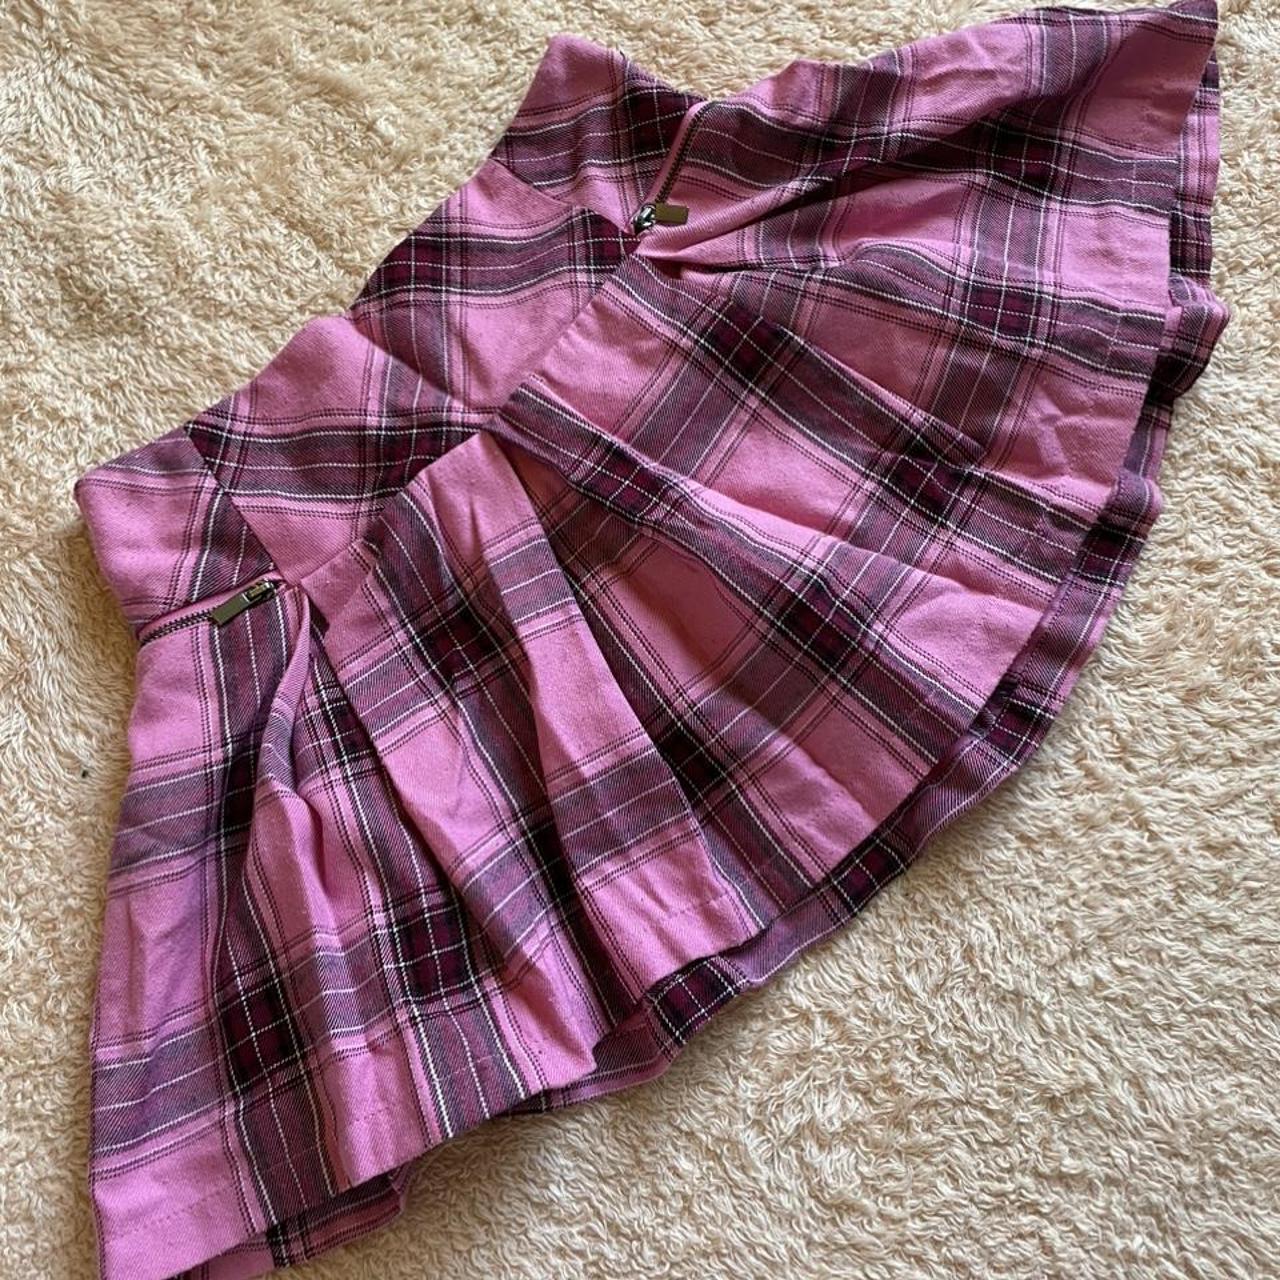 A cute short fluffy skirt, size 14 but fits like a... - Depop